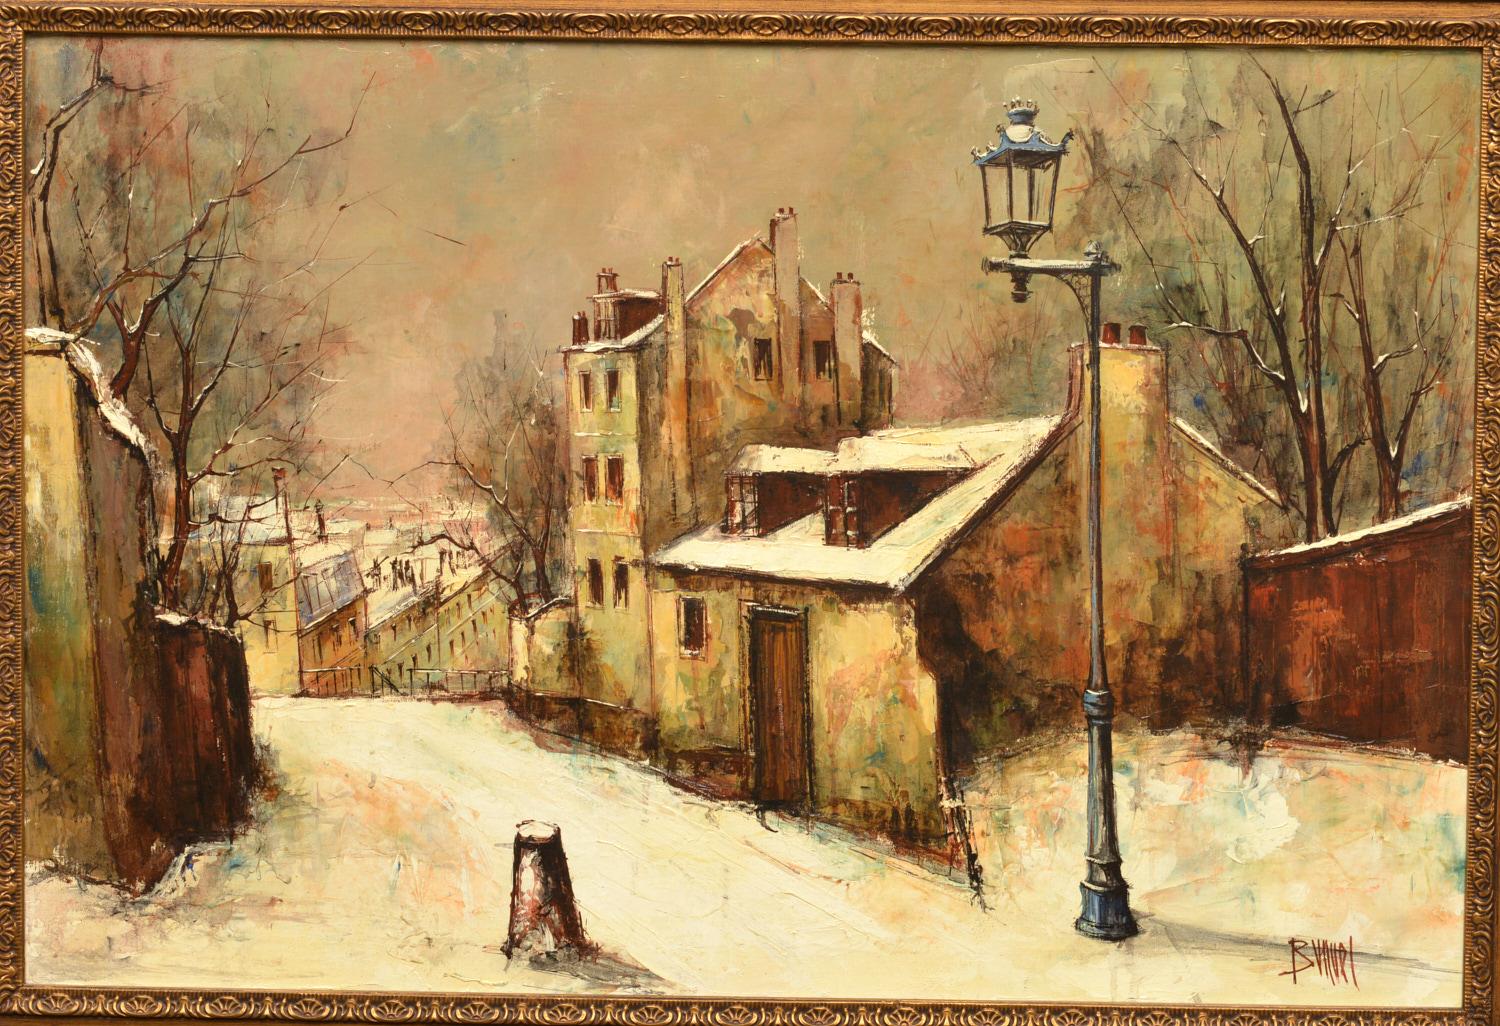 Manuel Monton Buñuel (Spanier, geb. 1940), eine stimmungsvolle Straßenszene im Winter, Öl auf Leinwand, rechts unten signiert Buñuel, Ein ausdrucksstarkes zeitgenössisches Ölgemälde, der Künstler hat die Farbe in eiligen Strichen mit einem Spachtel